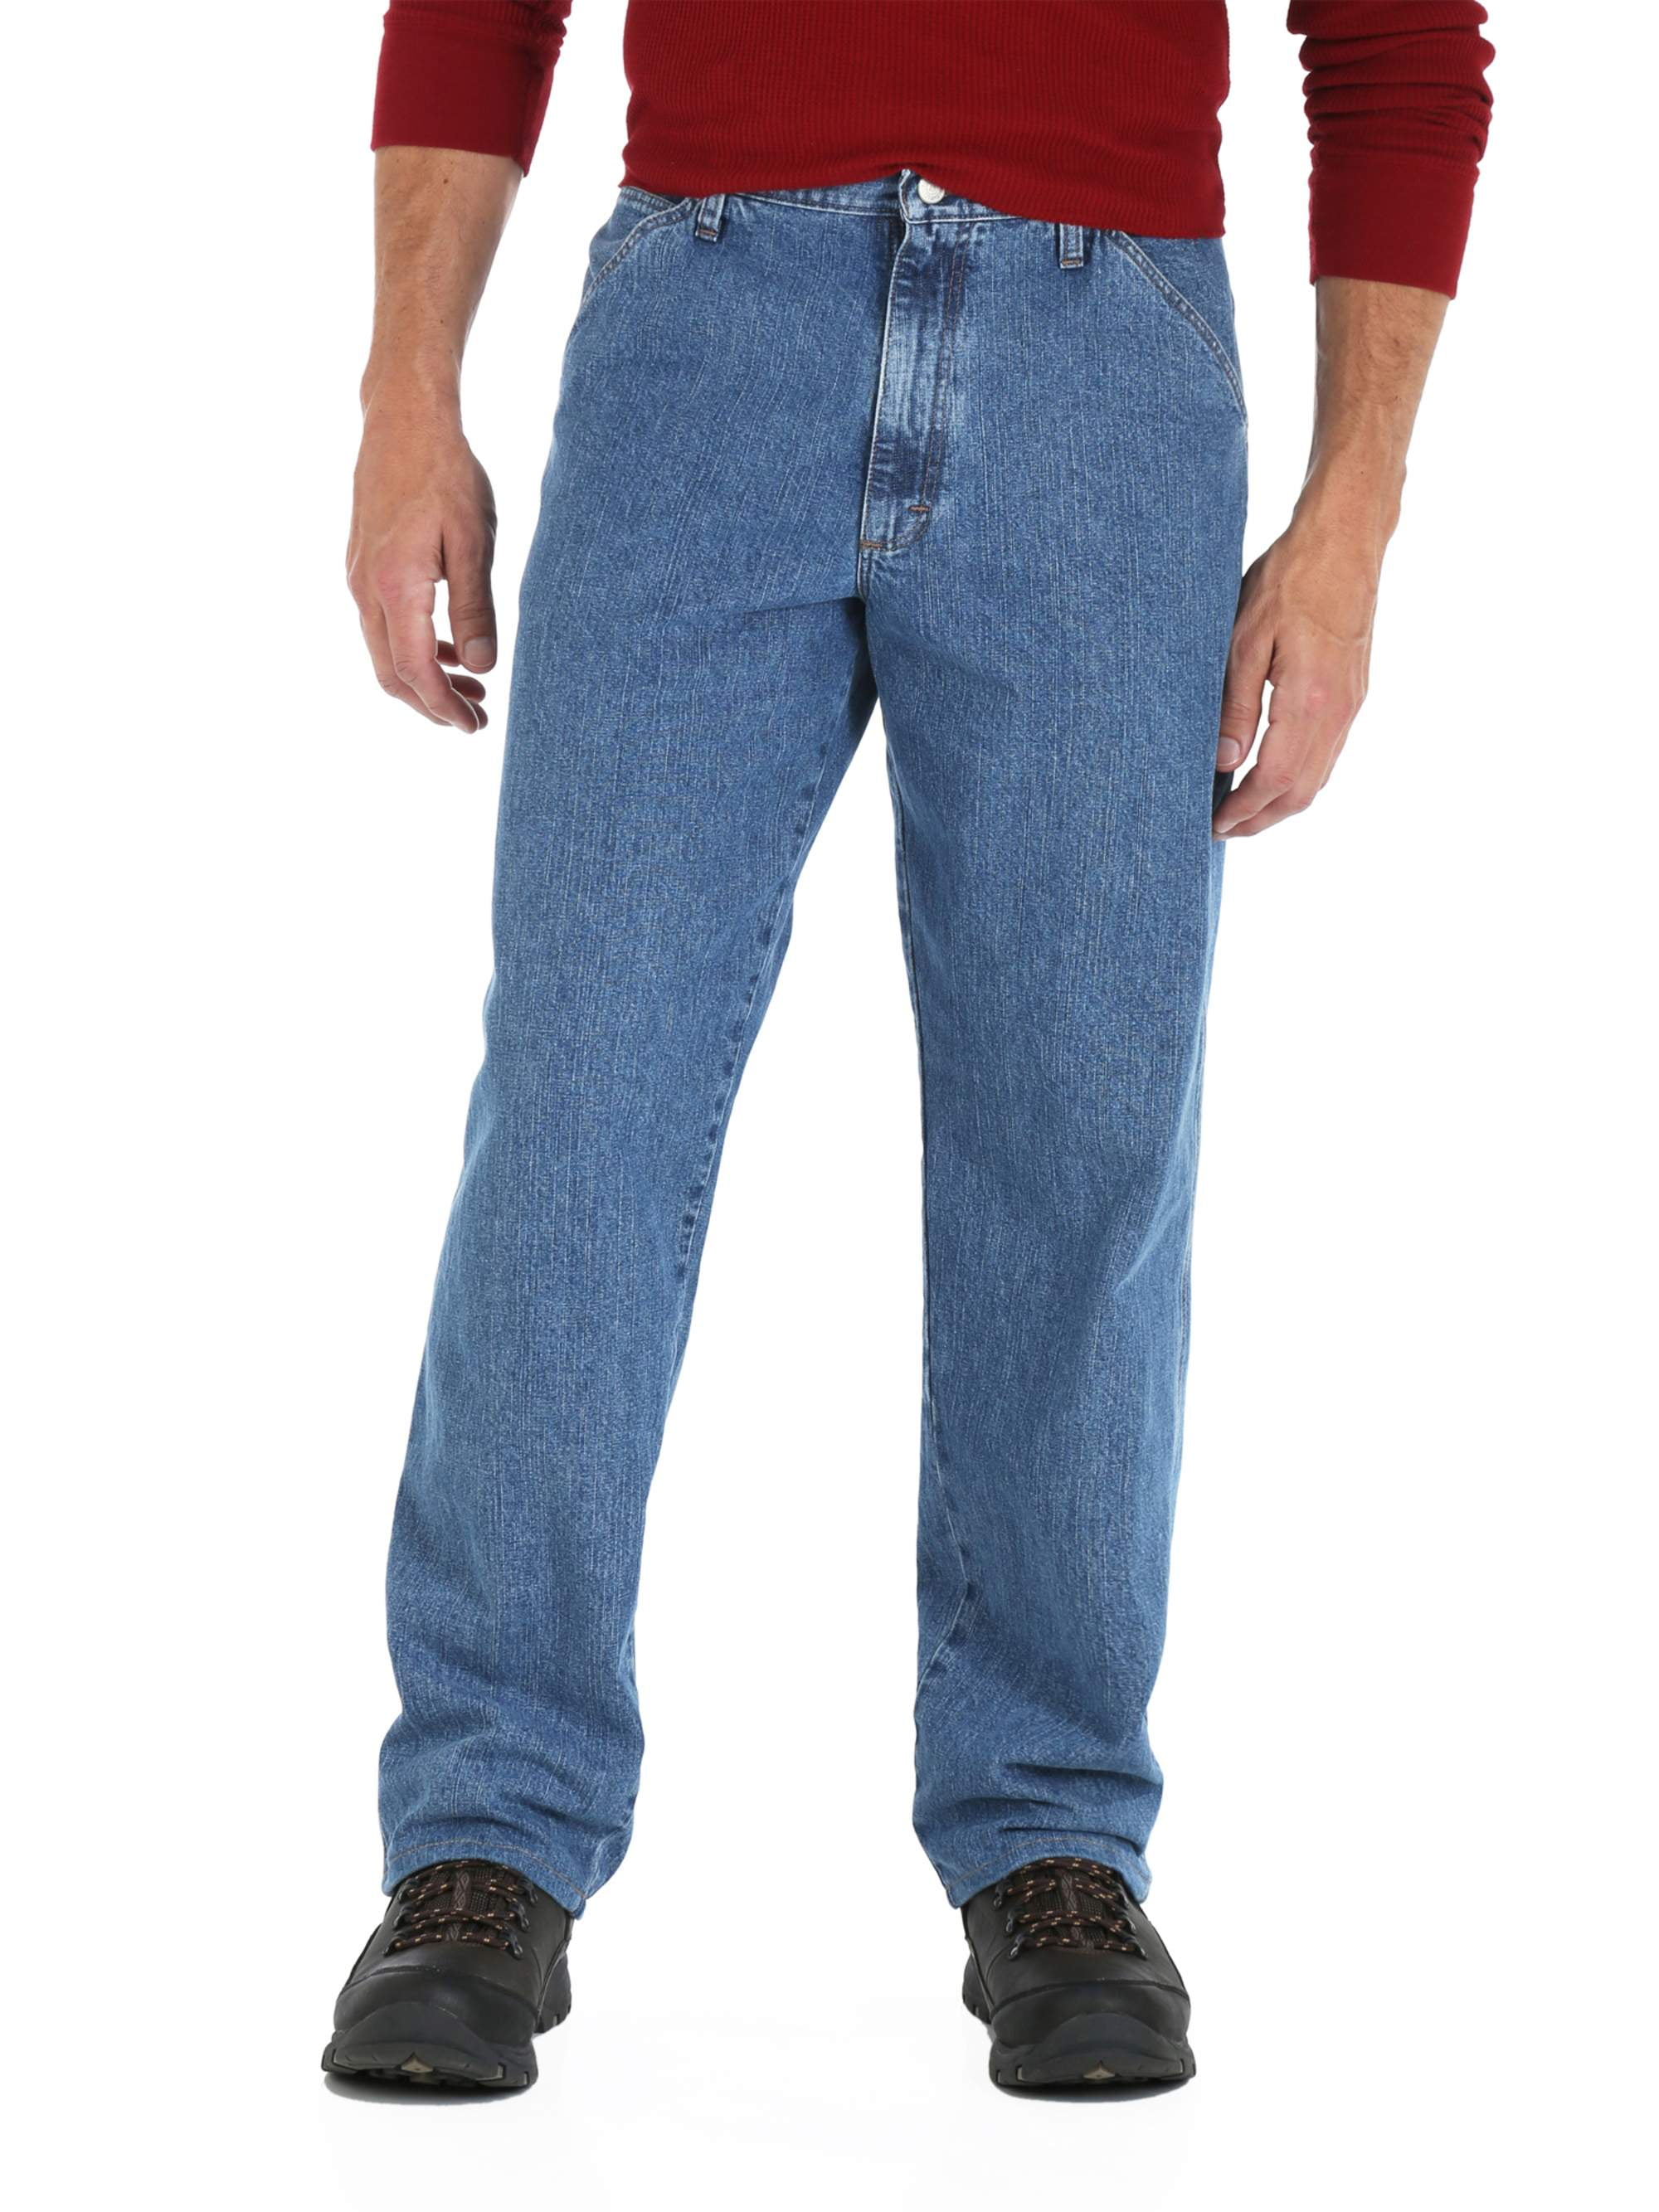 wrangler durable basic jeans